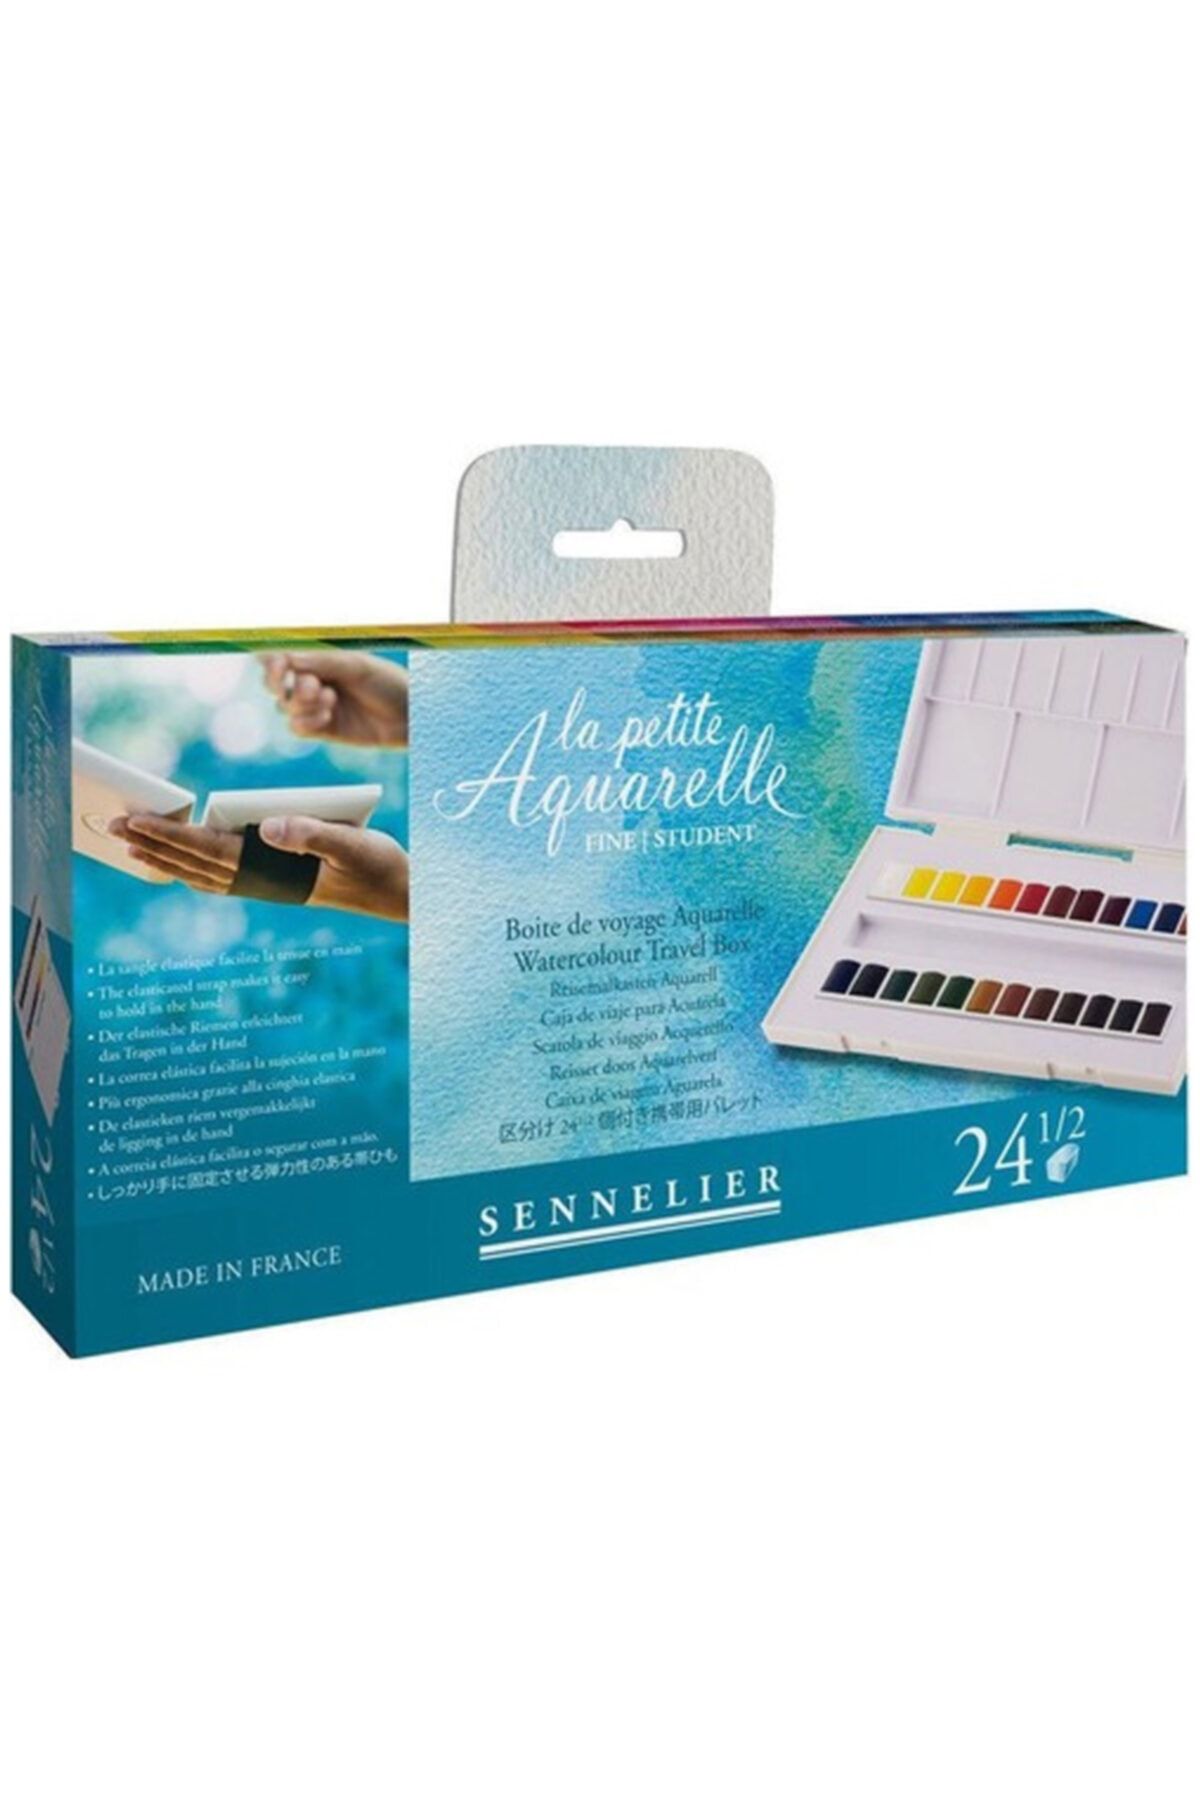 Sennelier Aquarelle 24 Renk Suluboya Set - Fırça Hediyeli 131681.00